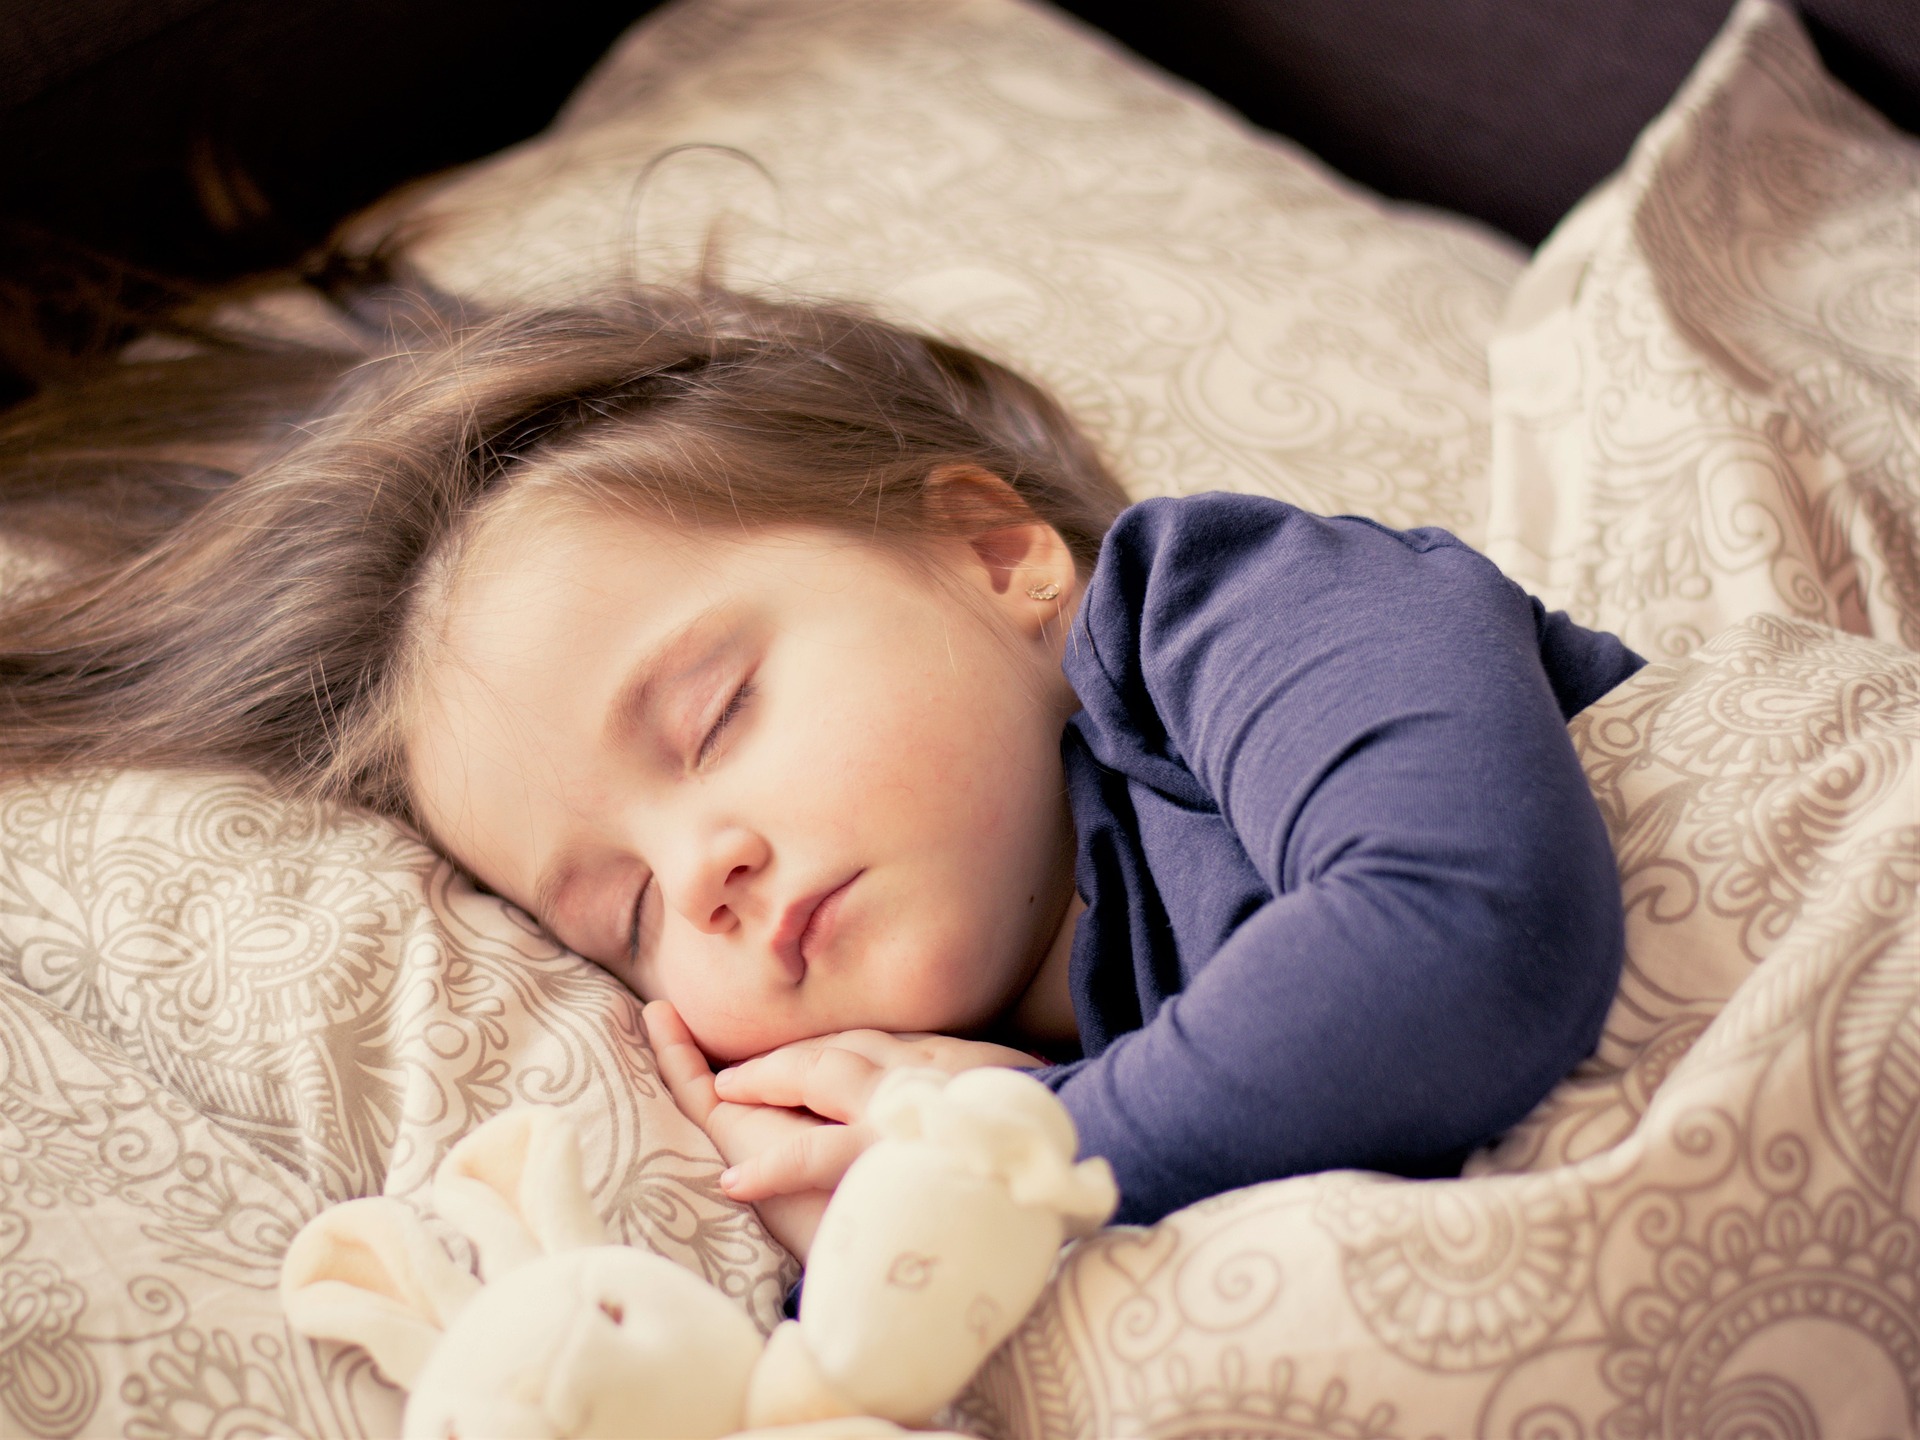 침대에서 옆으로 누워 인형을 옆에 두고 곤히 잠을 잘 자고 있는 어린아이 사진